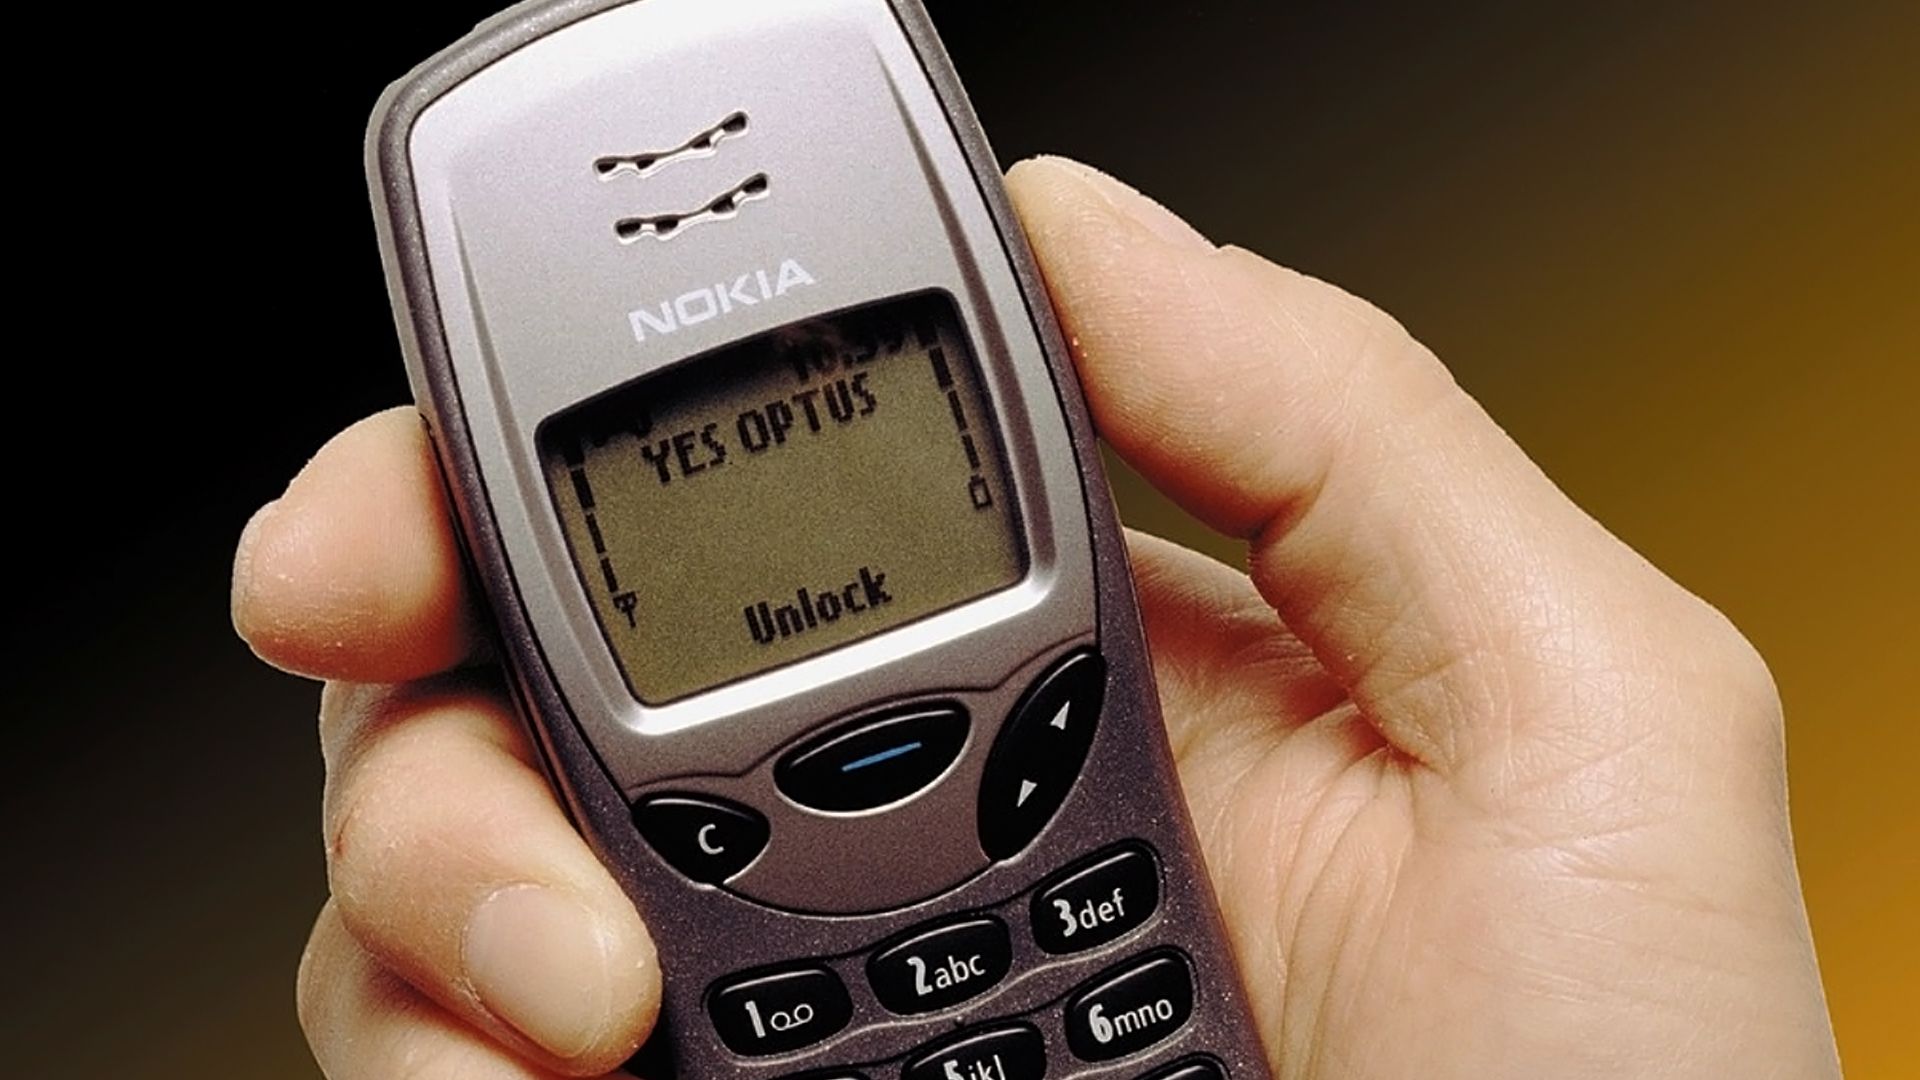 The original Nokia 3210.